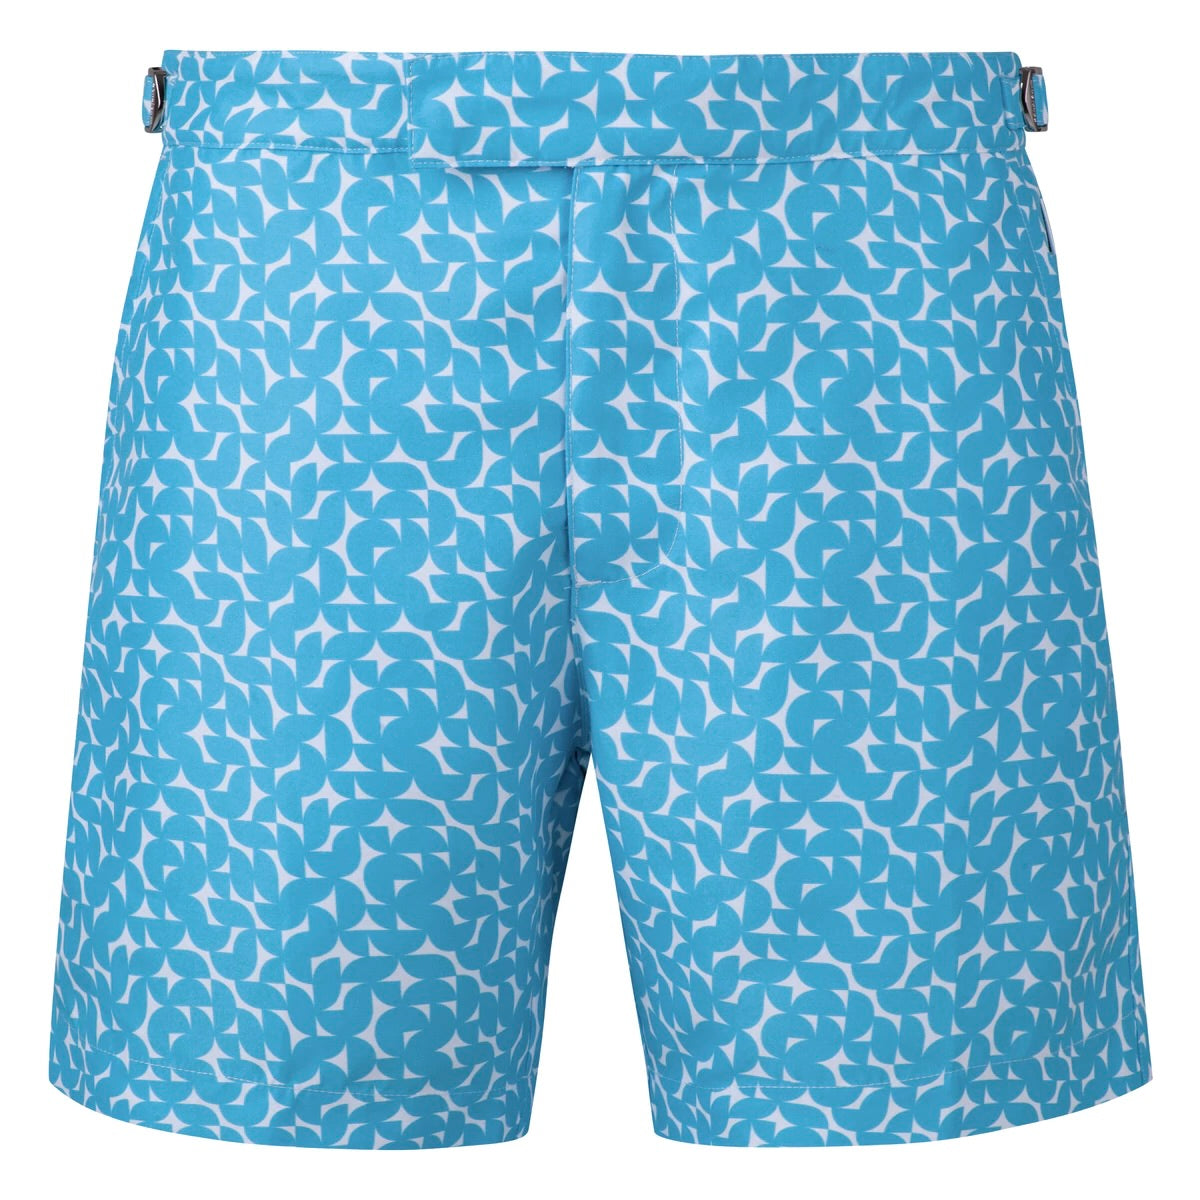 Portofino Swim Shorts